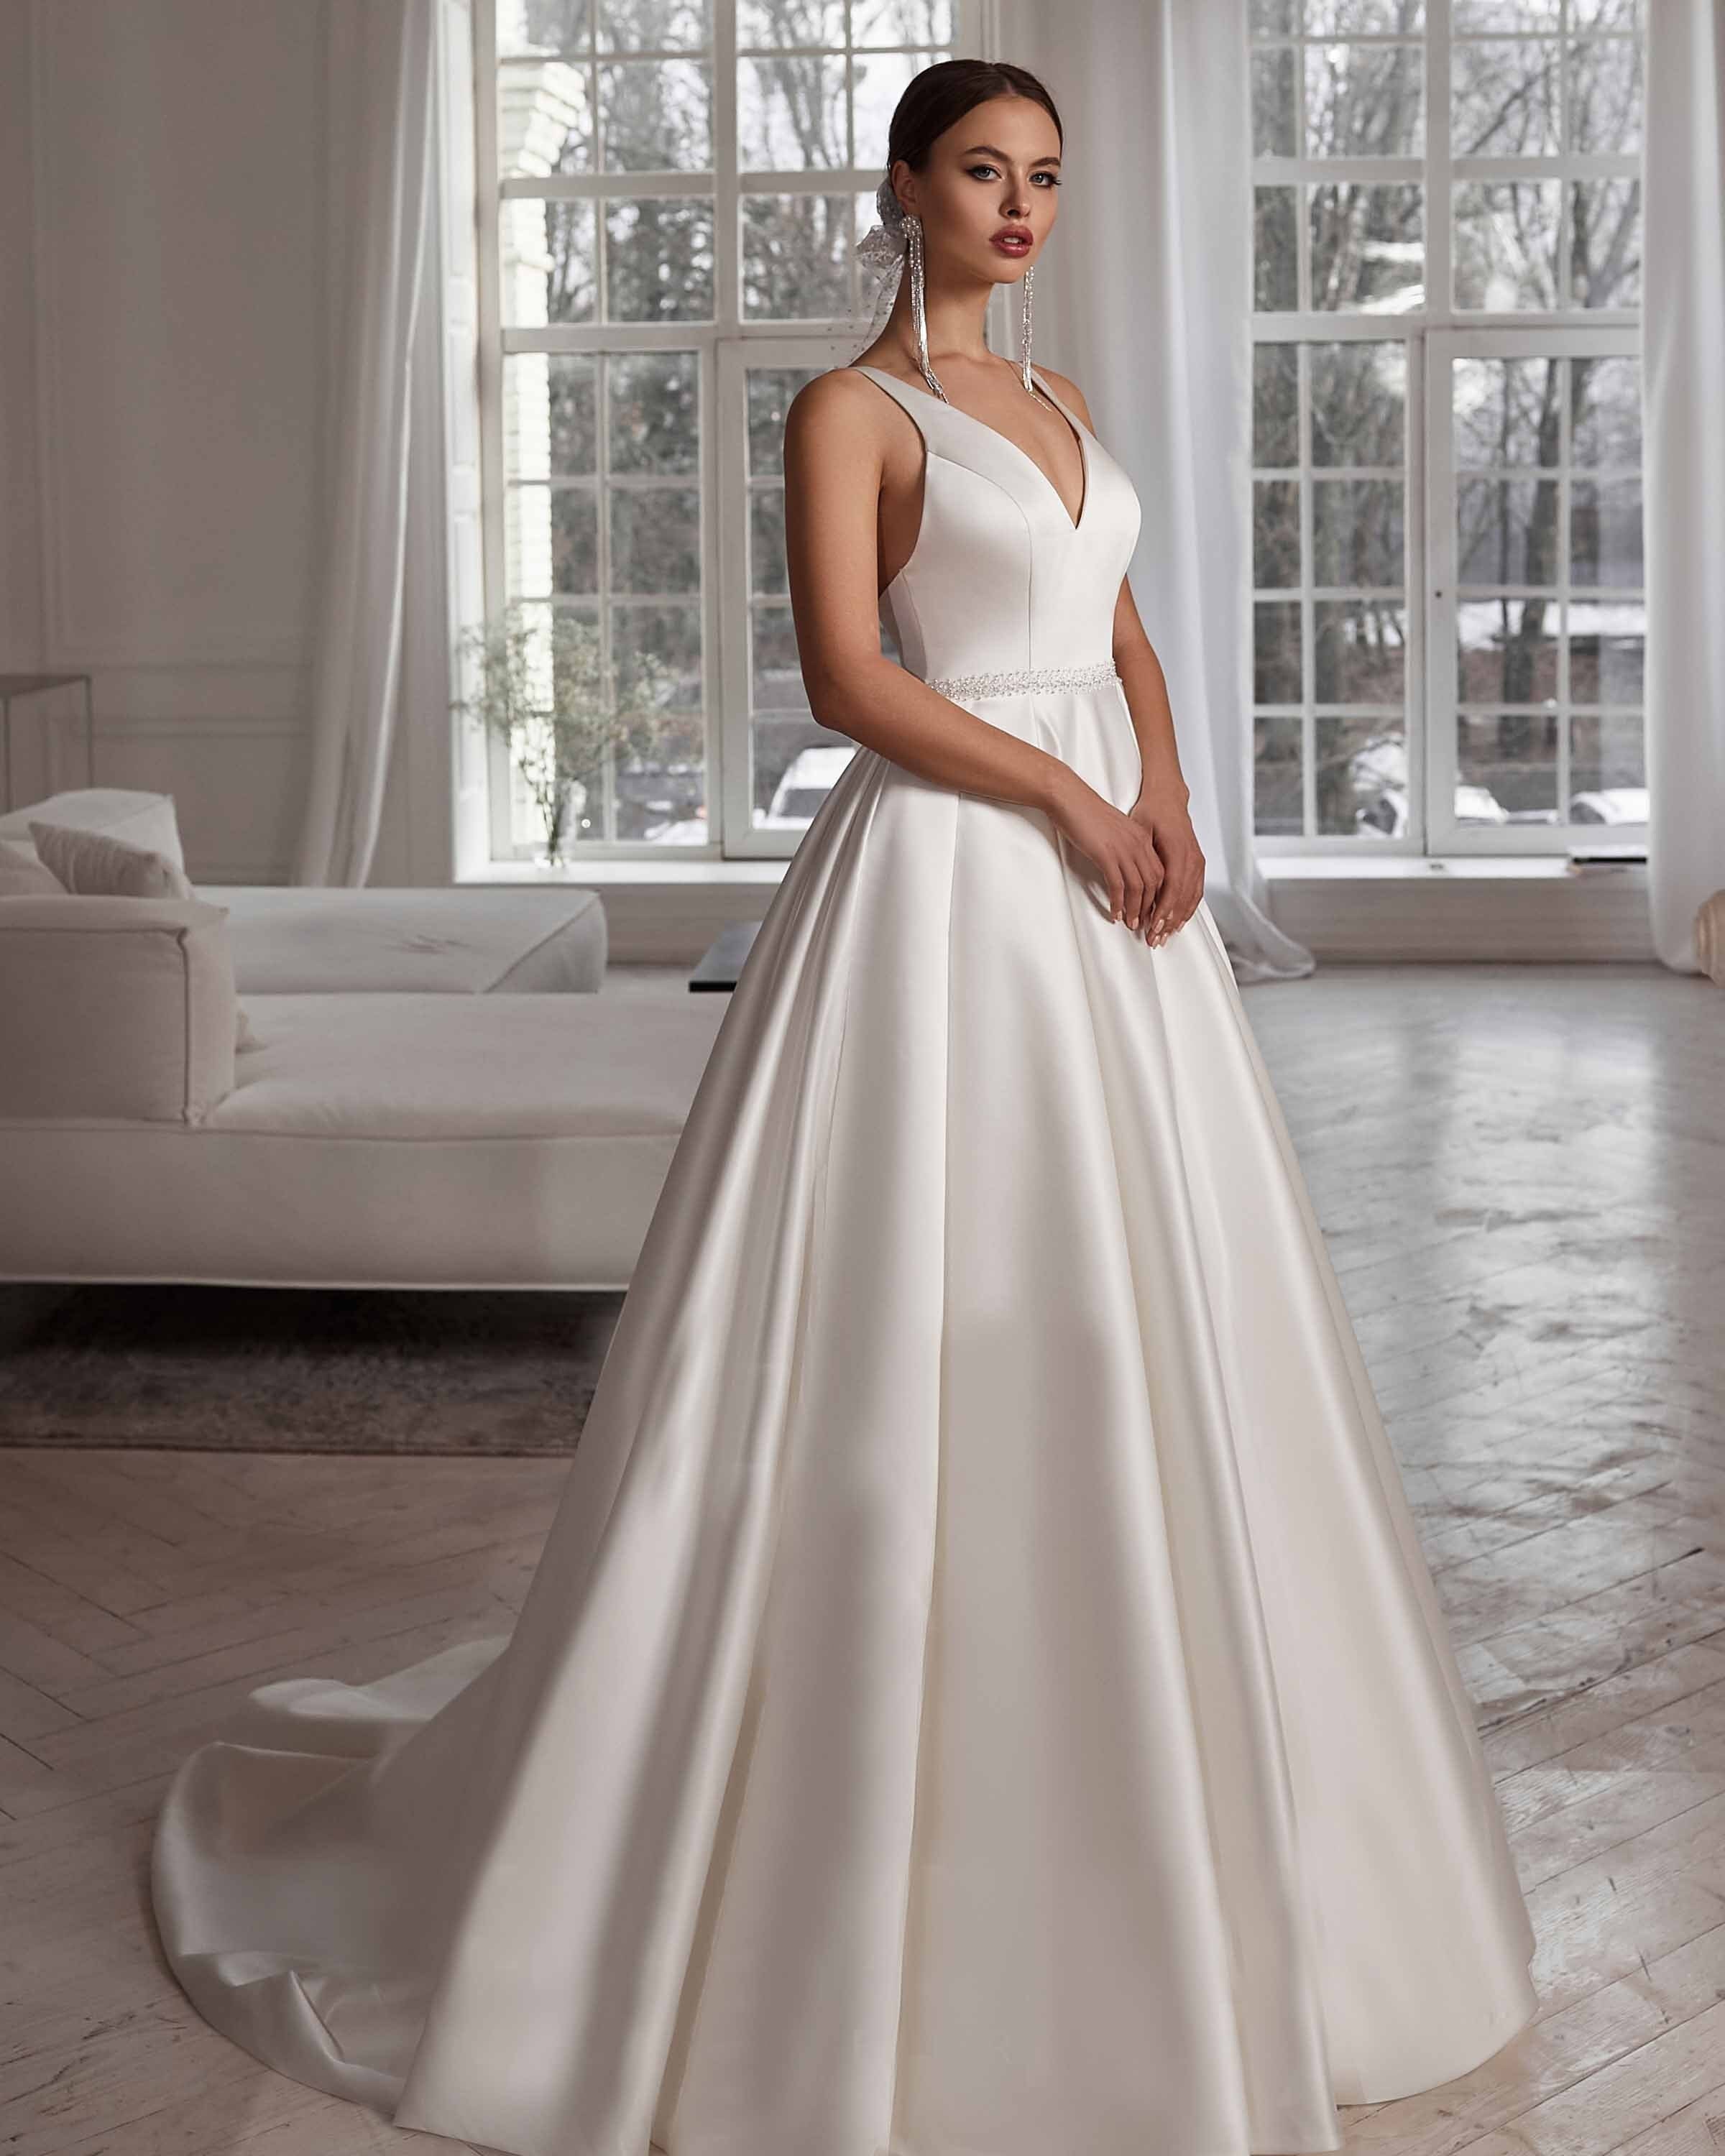 Satin Light Dress, White Bridal Gown, Long Dress, Bridal White Elegant  Dress, Star Wedding Dress, Celestial Dress, Modern Wedding Dress -   Ireland